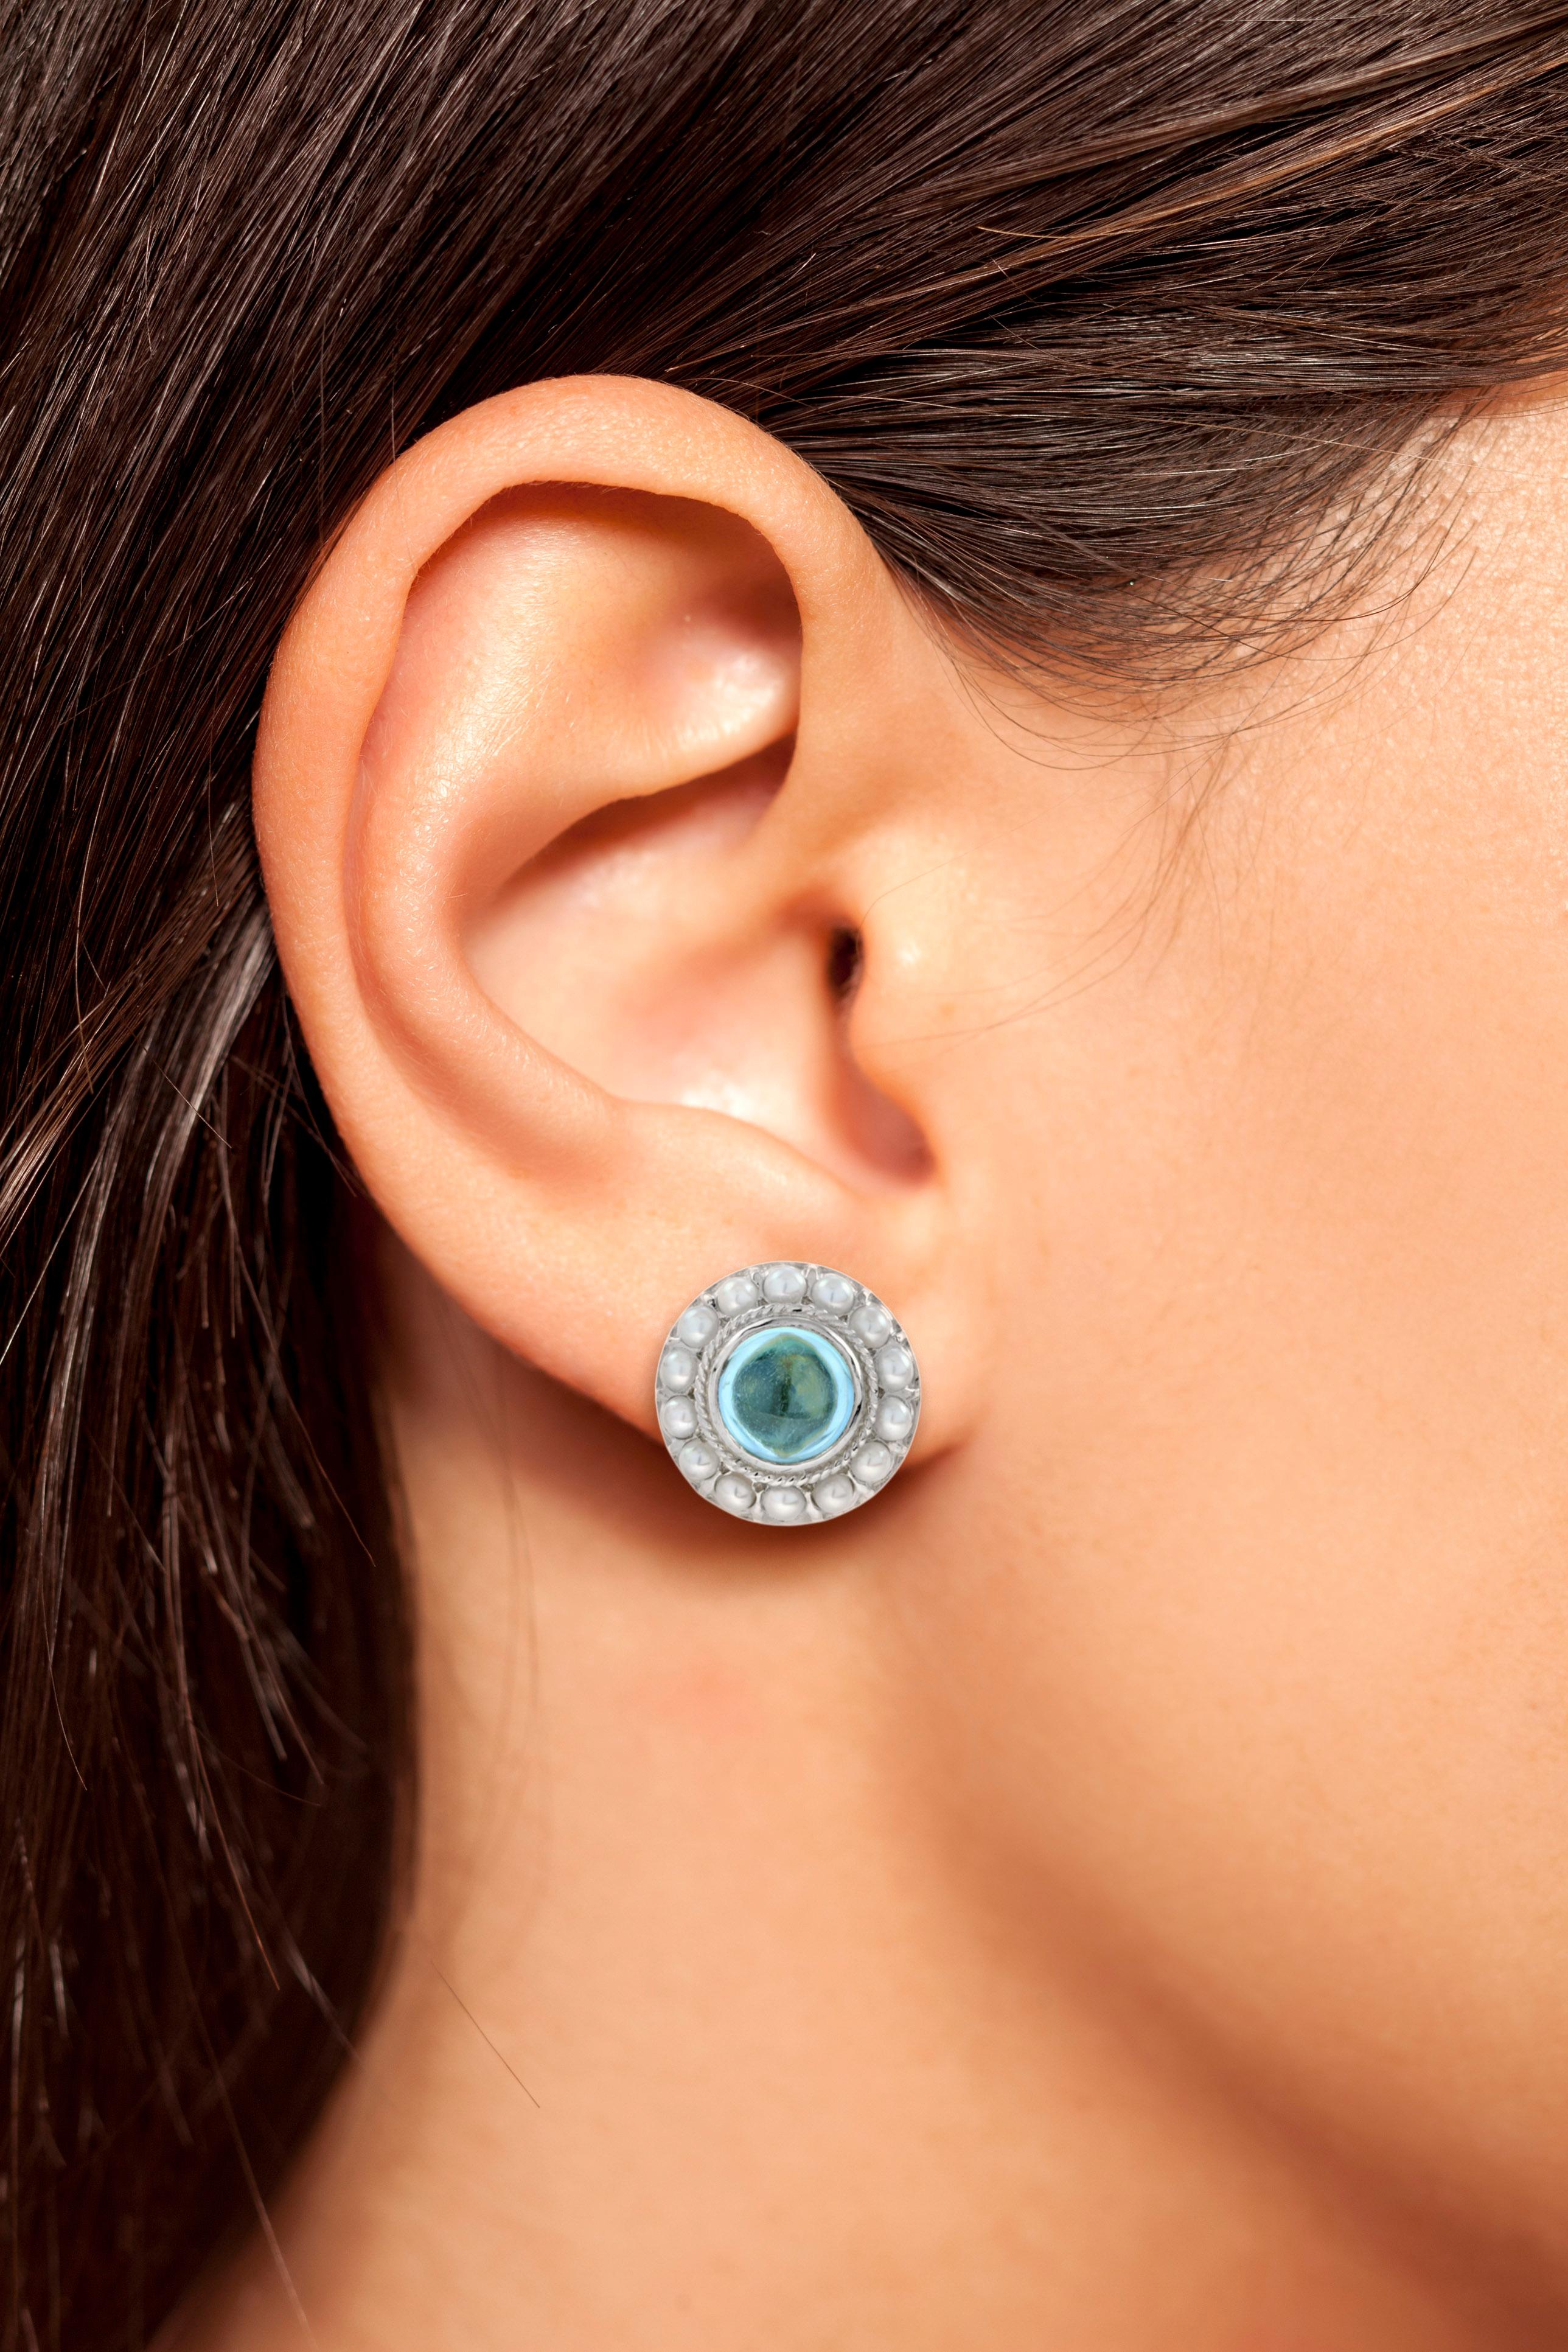 Une jolie paire de boucles d'oreilles en topaze bleu ciel cabochon et perle. Ils ont été fabriqués dans le style victorien. Un cadeau parfait pour votre bien-aimé(e).

Information
Métal : Or blanc 14K
Largeur : 14 mm.
Longueur : 14 mm.
Poids : 5,50